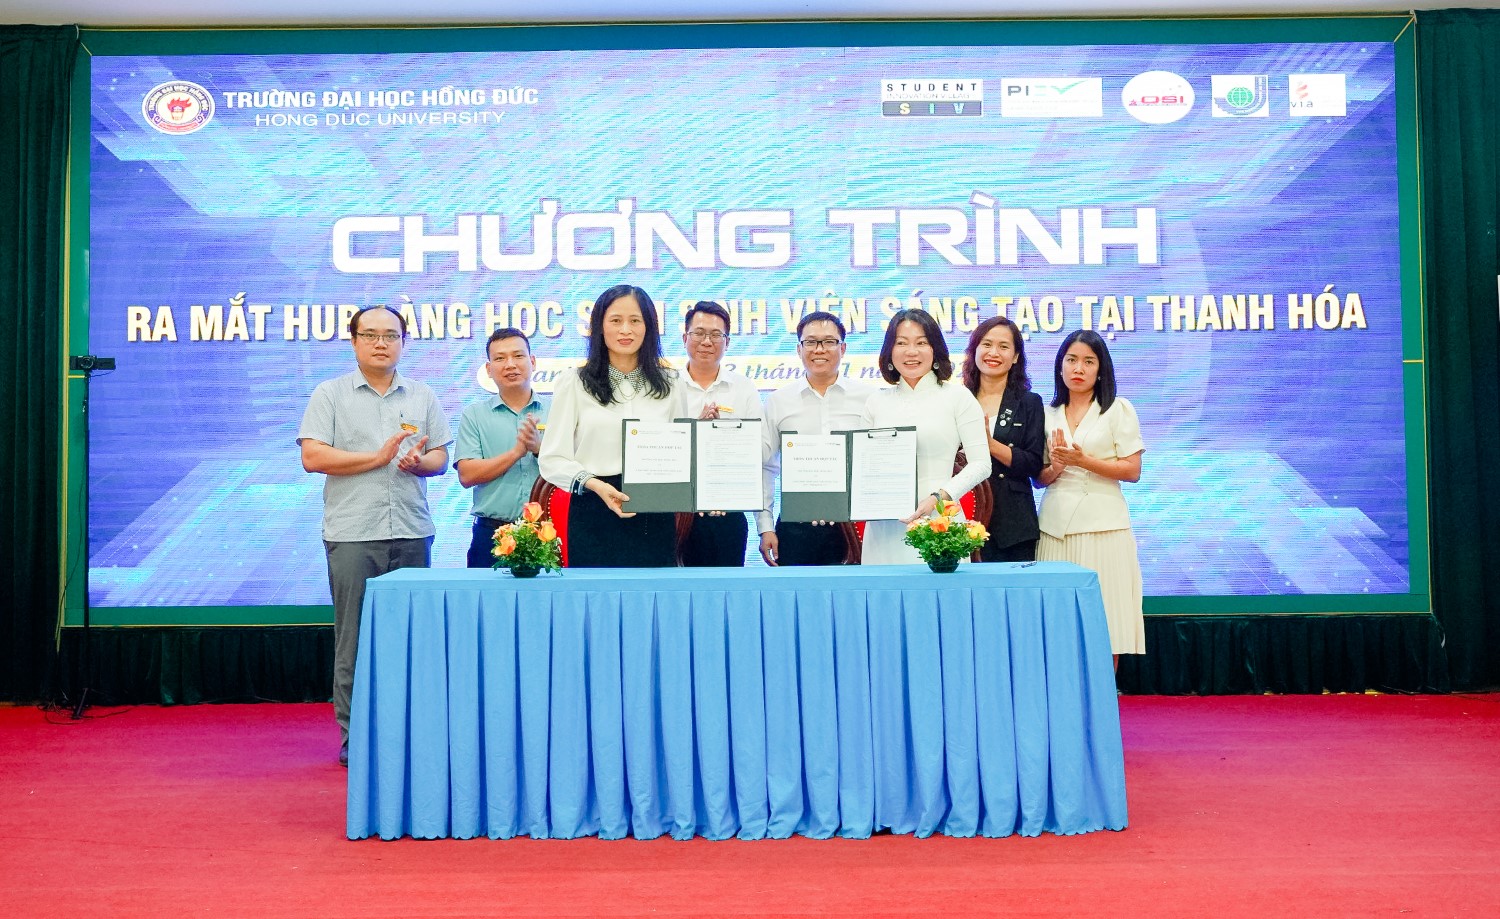 Tọa đàm kết nối hệ sinh thái khởi nghiệp đổi mới sáng tạo và chính thức ra mắt Hub Làng học sinh - sinh viên tại Thanh Hoá